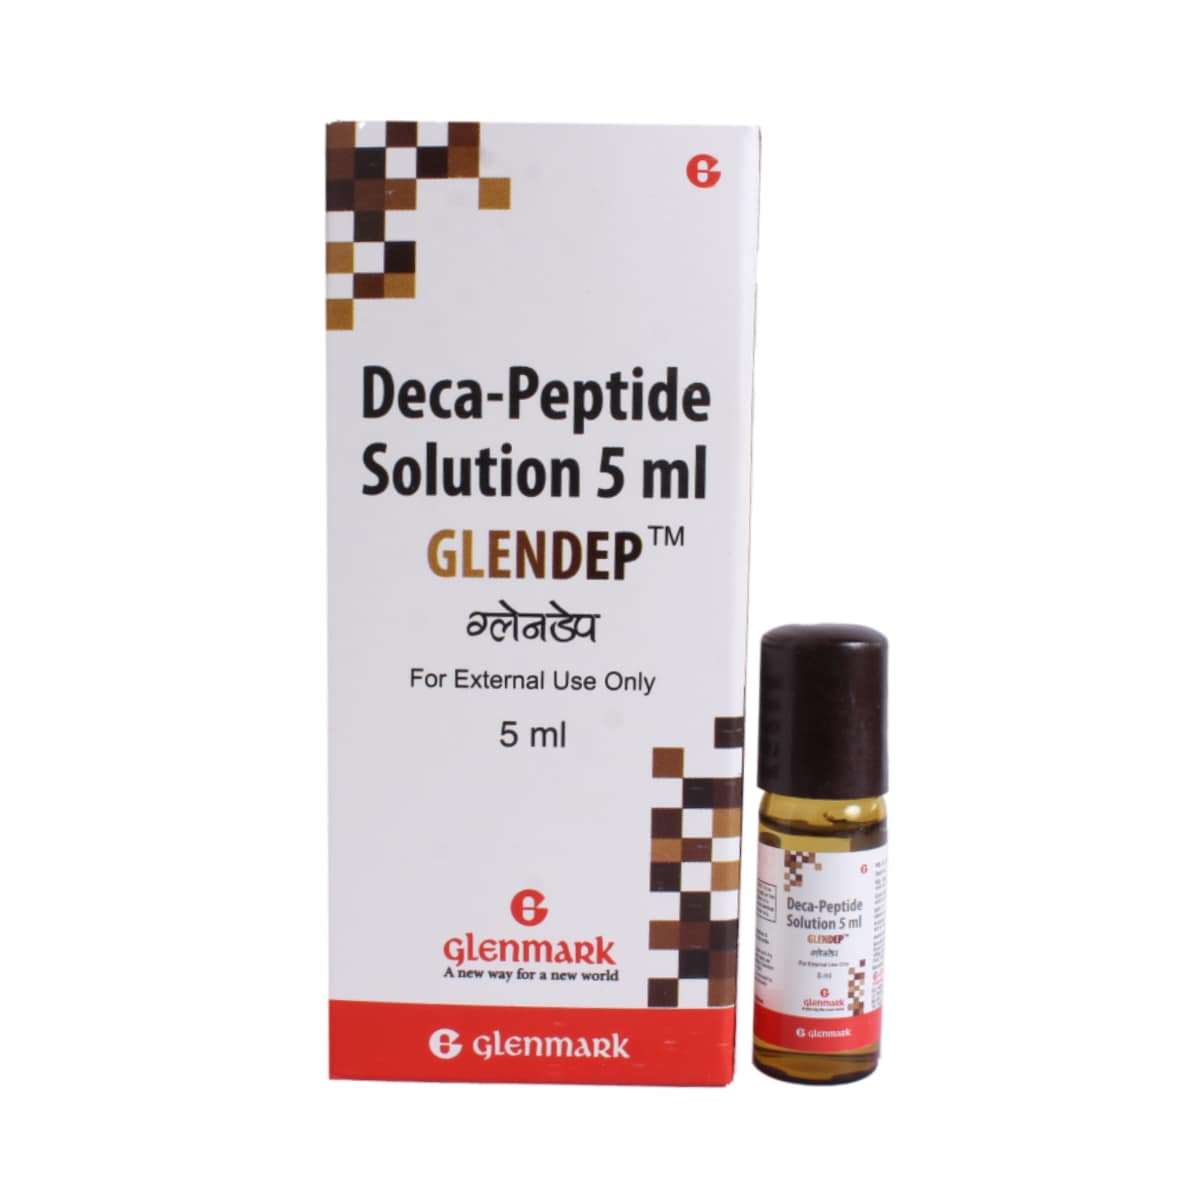 Buy Glendep Solution 5 ml Online